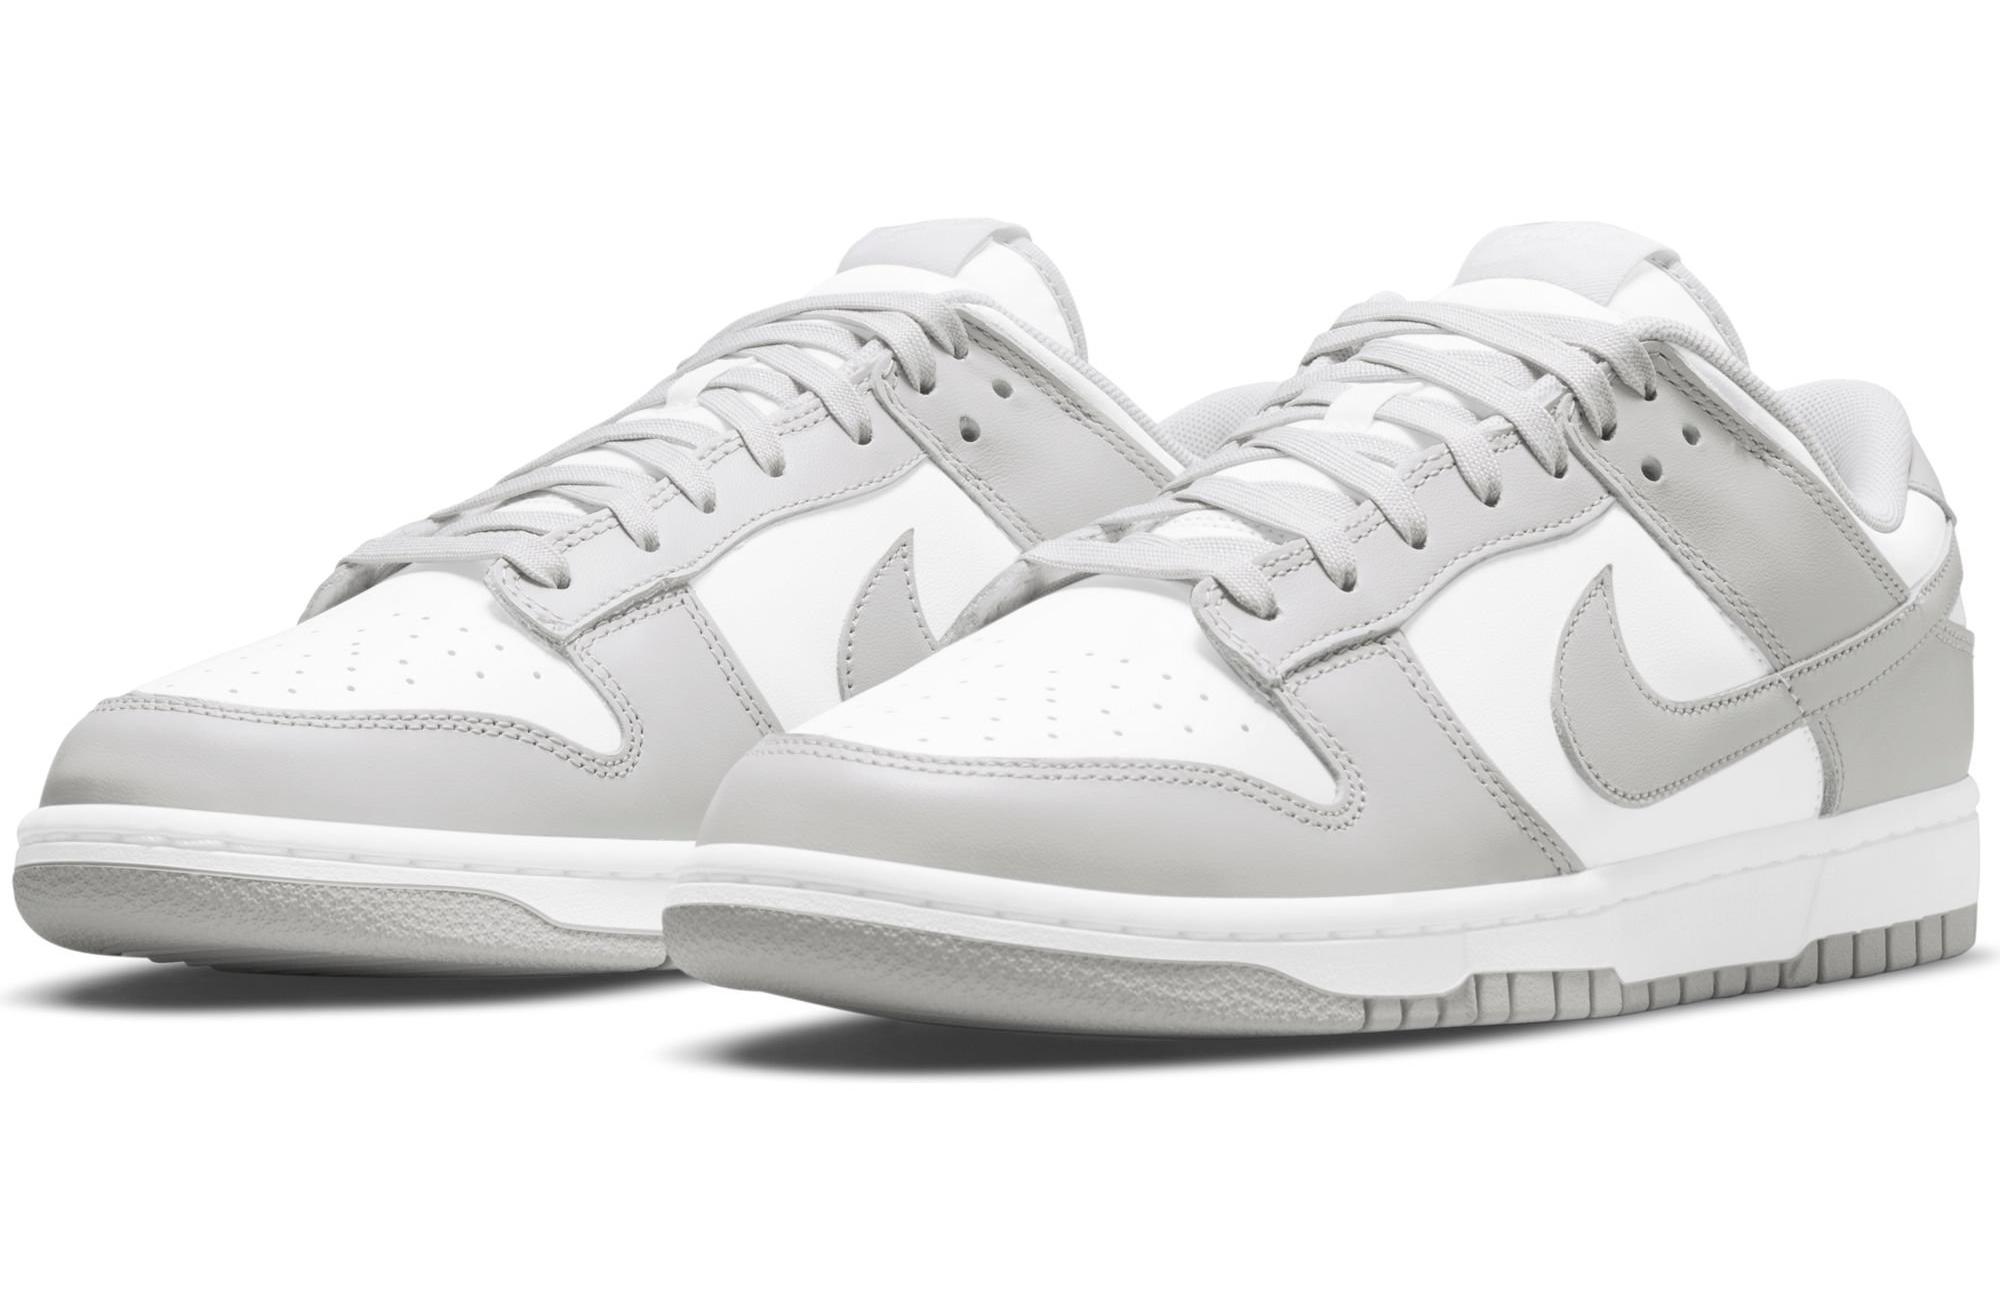 Sneakers Release – Nike Dunk Low “Grey Fog” Men's Shoe Arriving 9/15